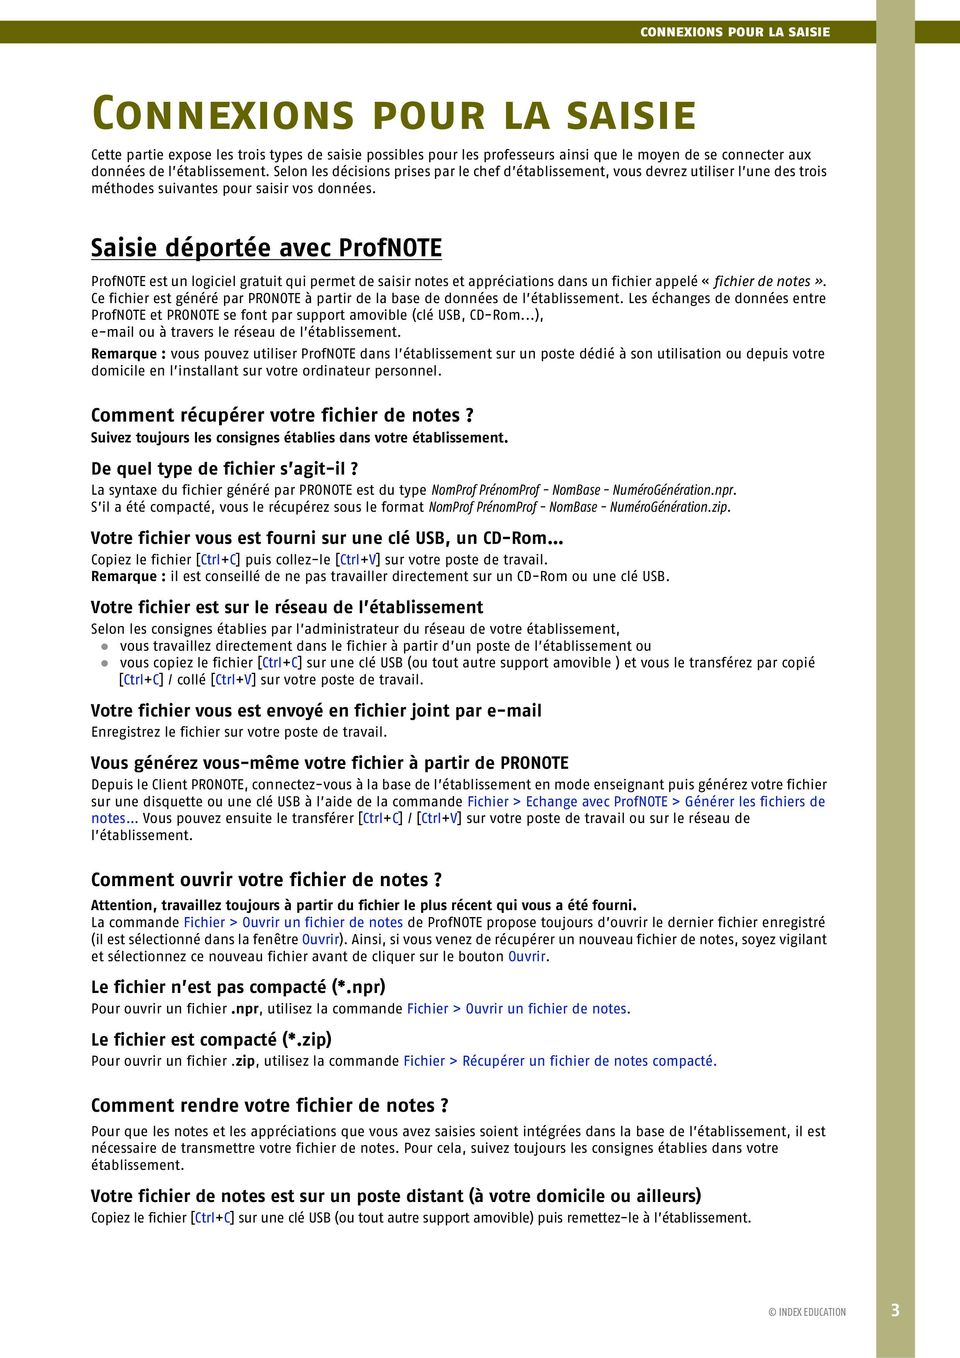 Saisie déportée avec ProfNOTE ProfNOTE est un logiciel gratuit qui permet de saisir notes et appréciations dans un fichier appelé «fichier de notes».